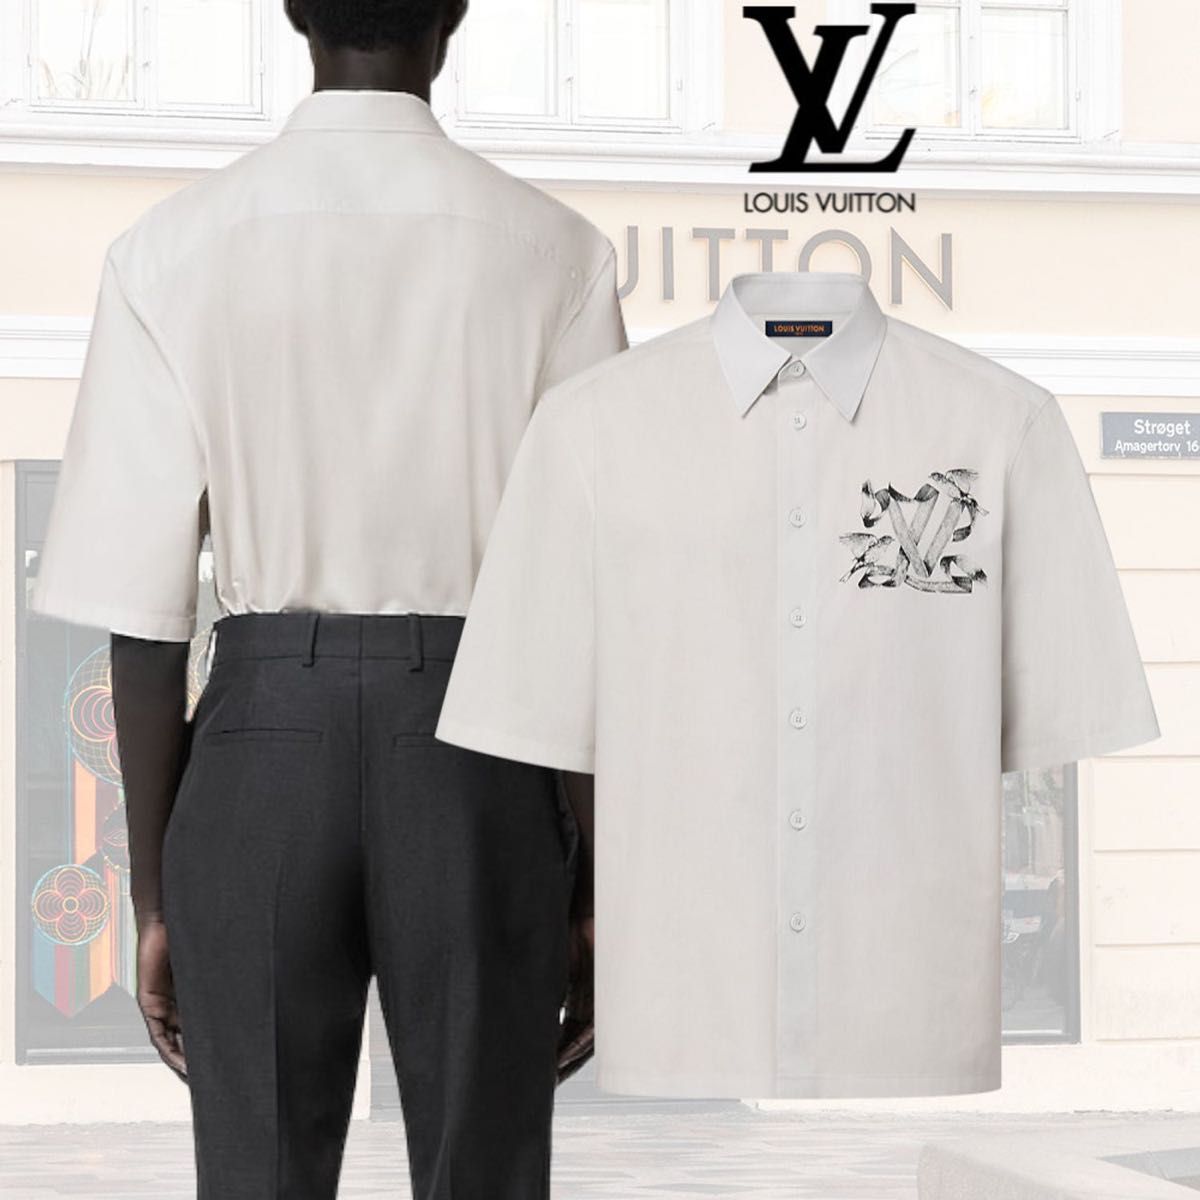 新作 海外 LOUIS VUITTON ルイヴィトン シャツ Sサイズ ホワイト 半袖 シャツ